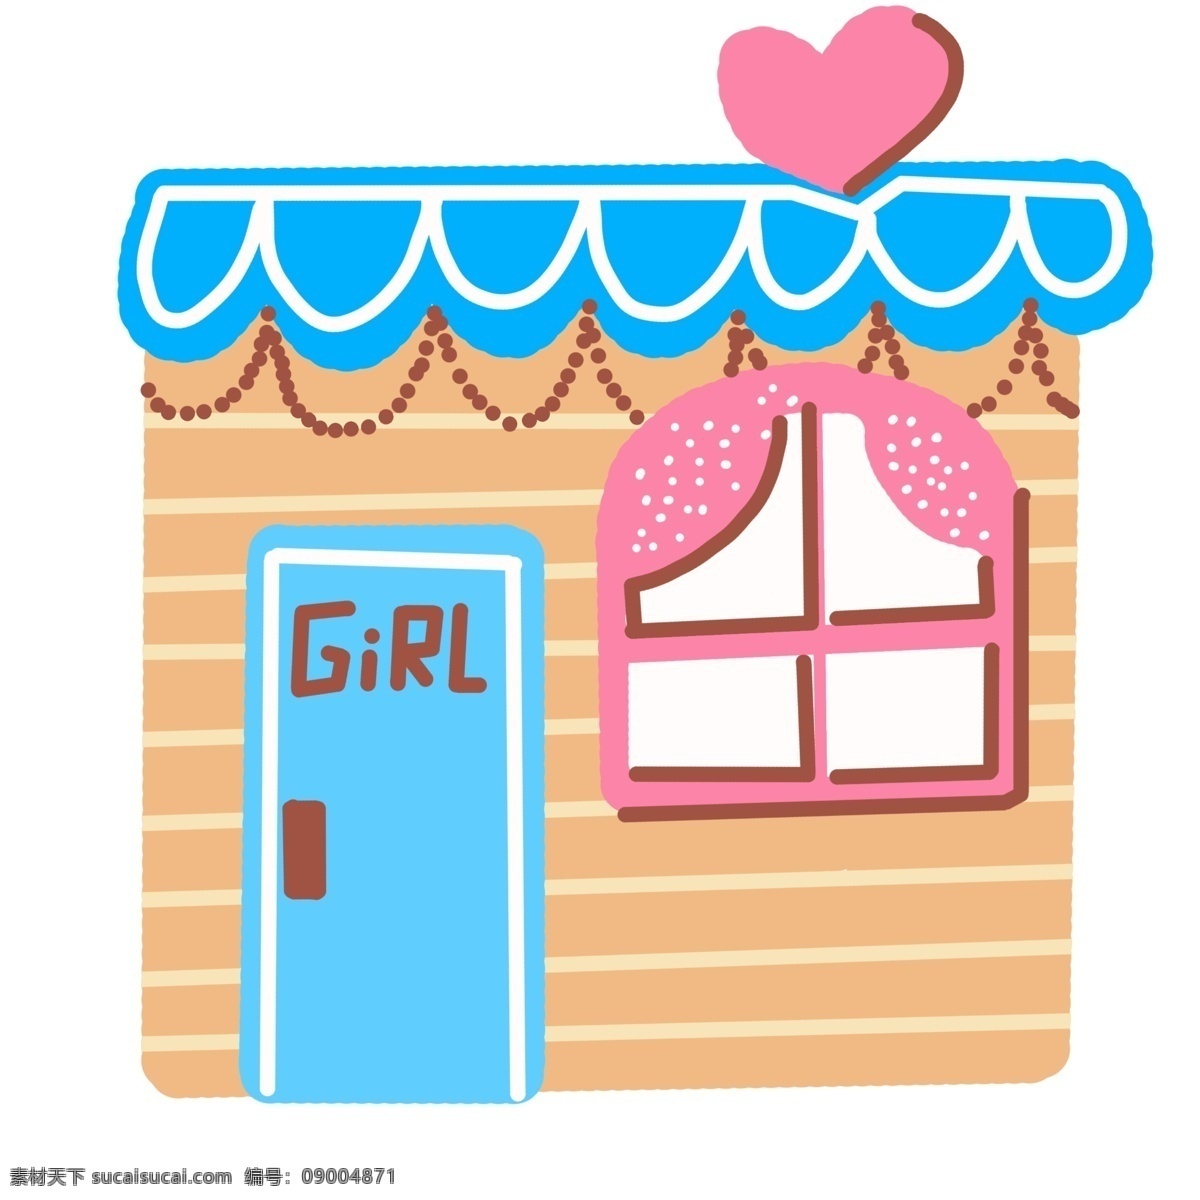 漂亮 女孩 房屋 插图 红色桃心 粉色窗户 蓝色 小房子 漂亮的房子 女孩房屋插图 卡通房子 女孩房子